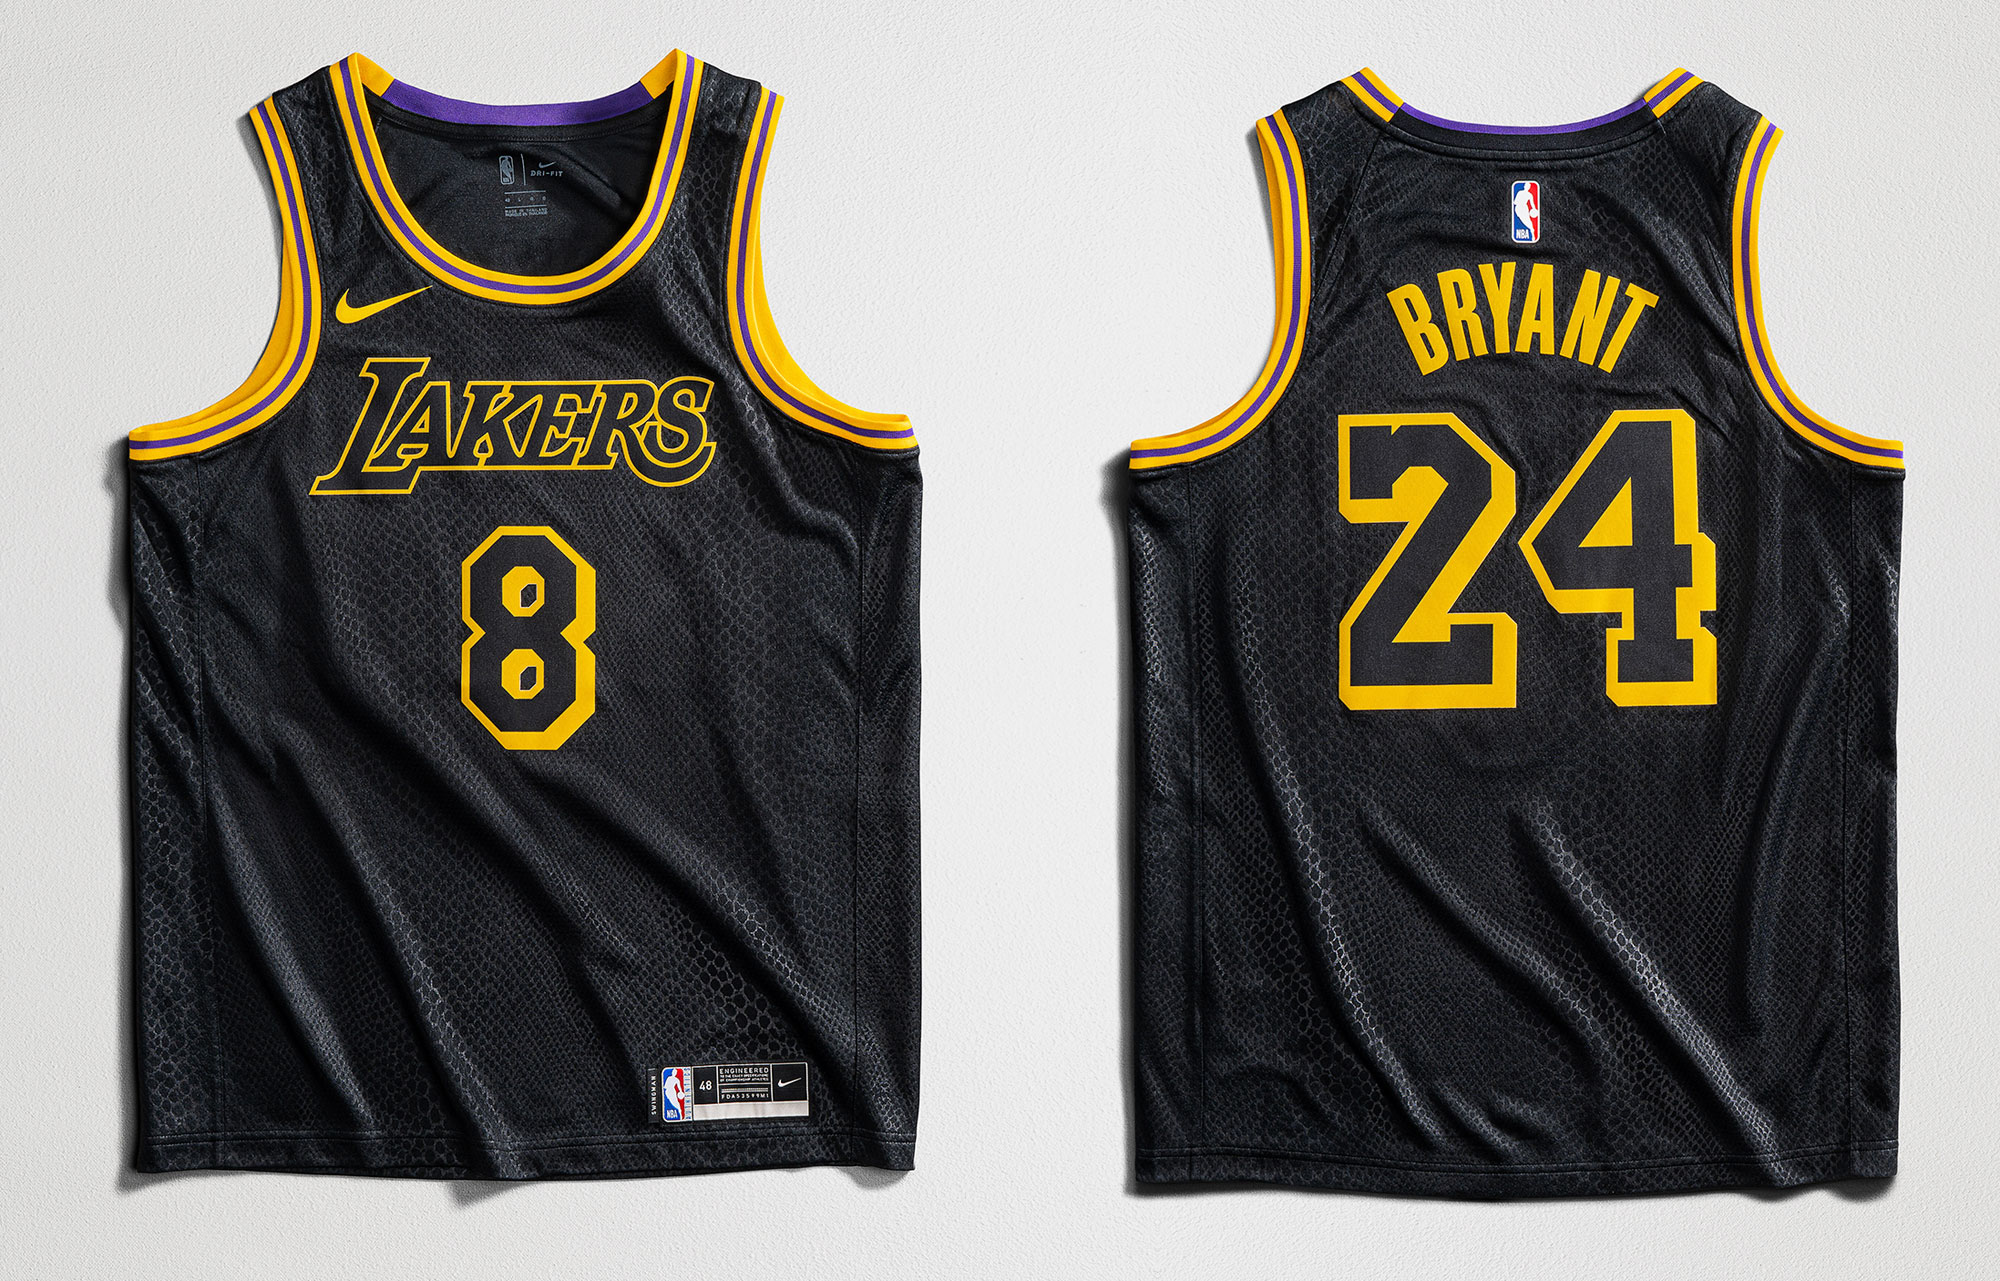 Nike Kobe Bryant Black Mamba Lakers Jersey | Iicf